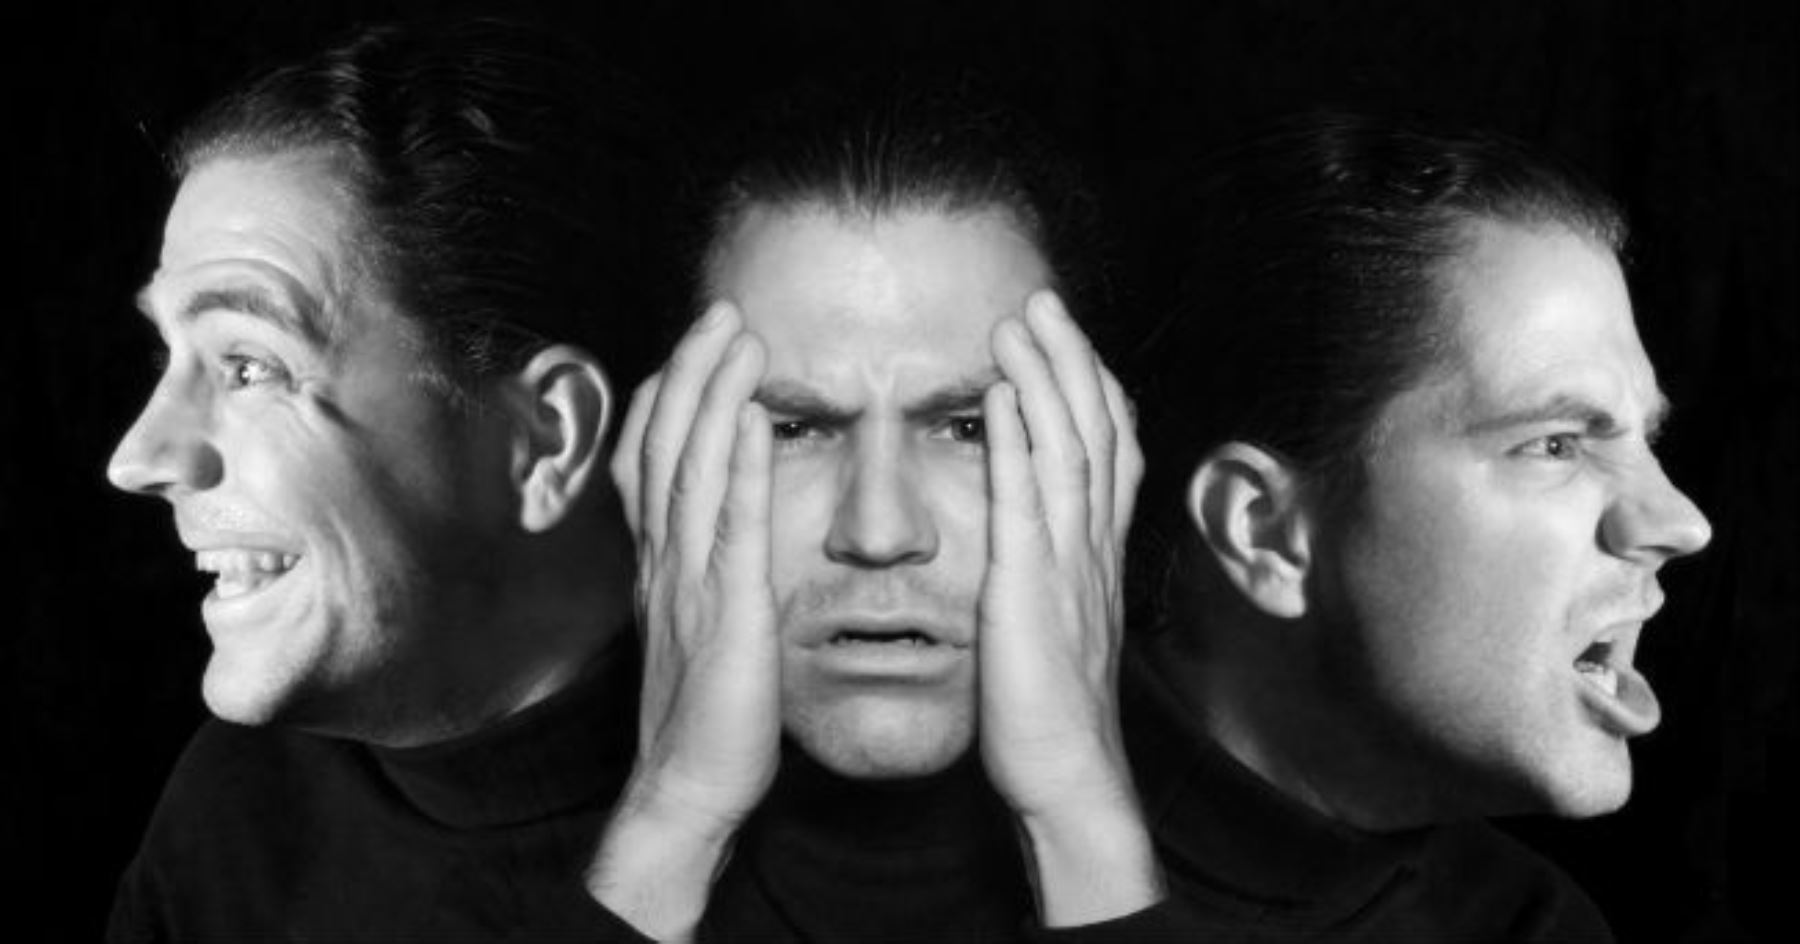 Trastorno bipolar afecta al 1% de peruanos, según especialista del Instituto Nacional de Salud Mental Honorio Delgado-Hideyo Noguchi.